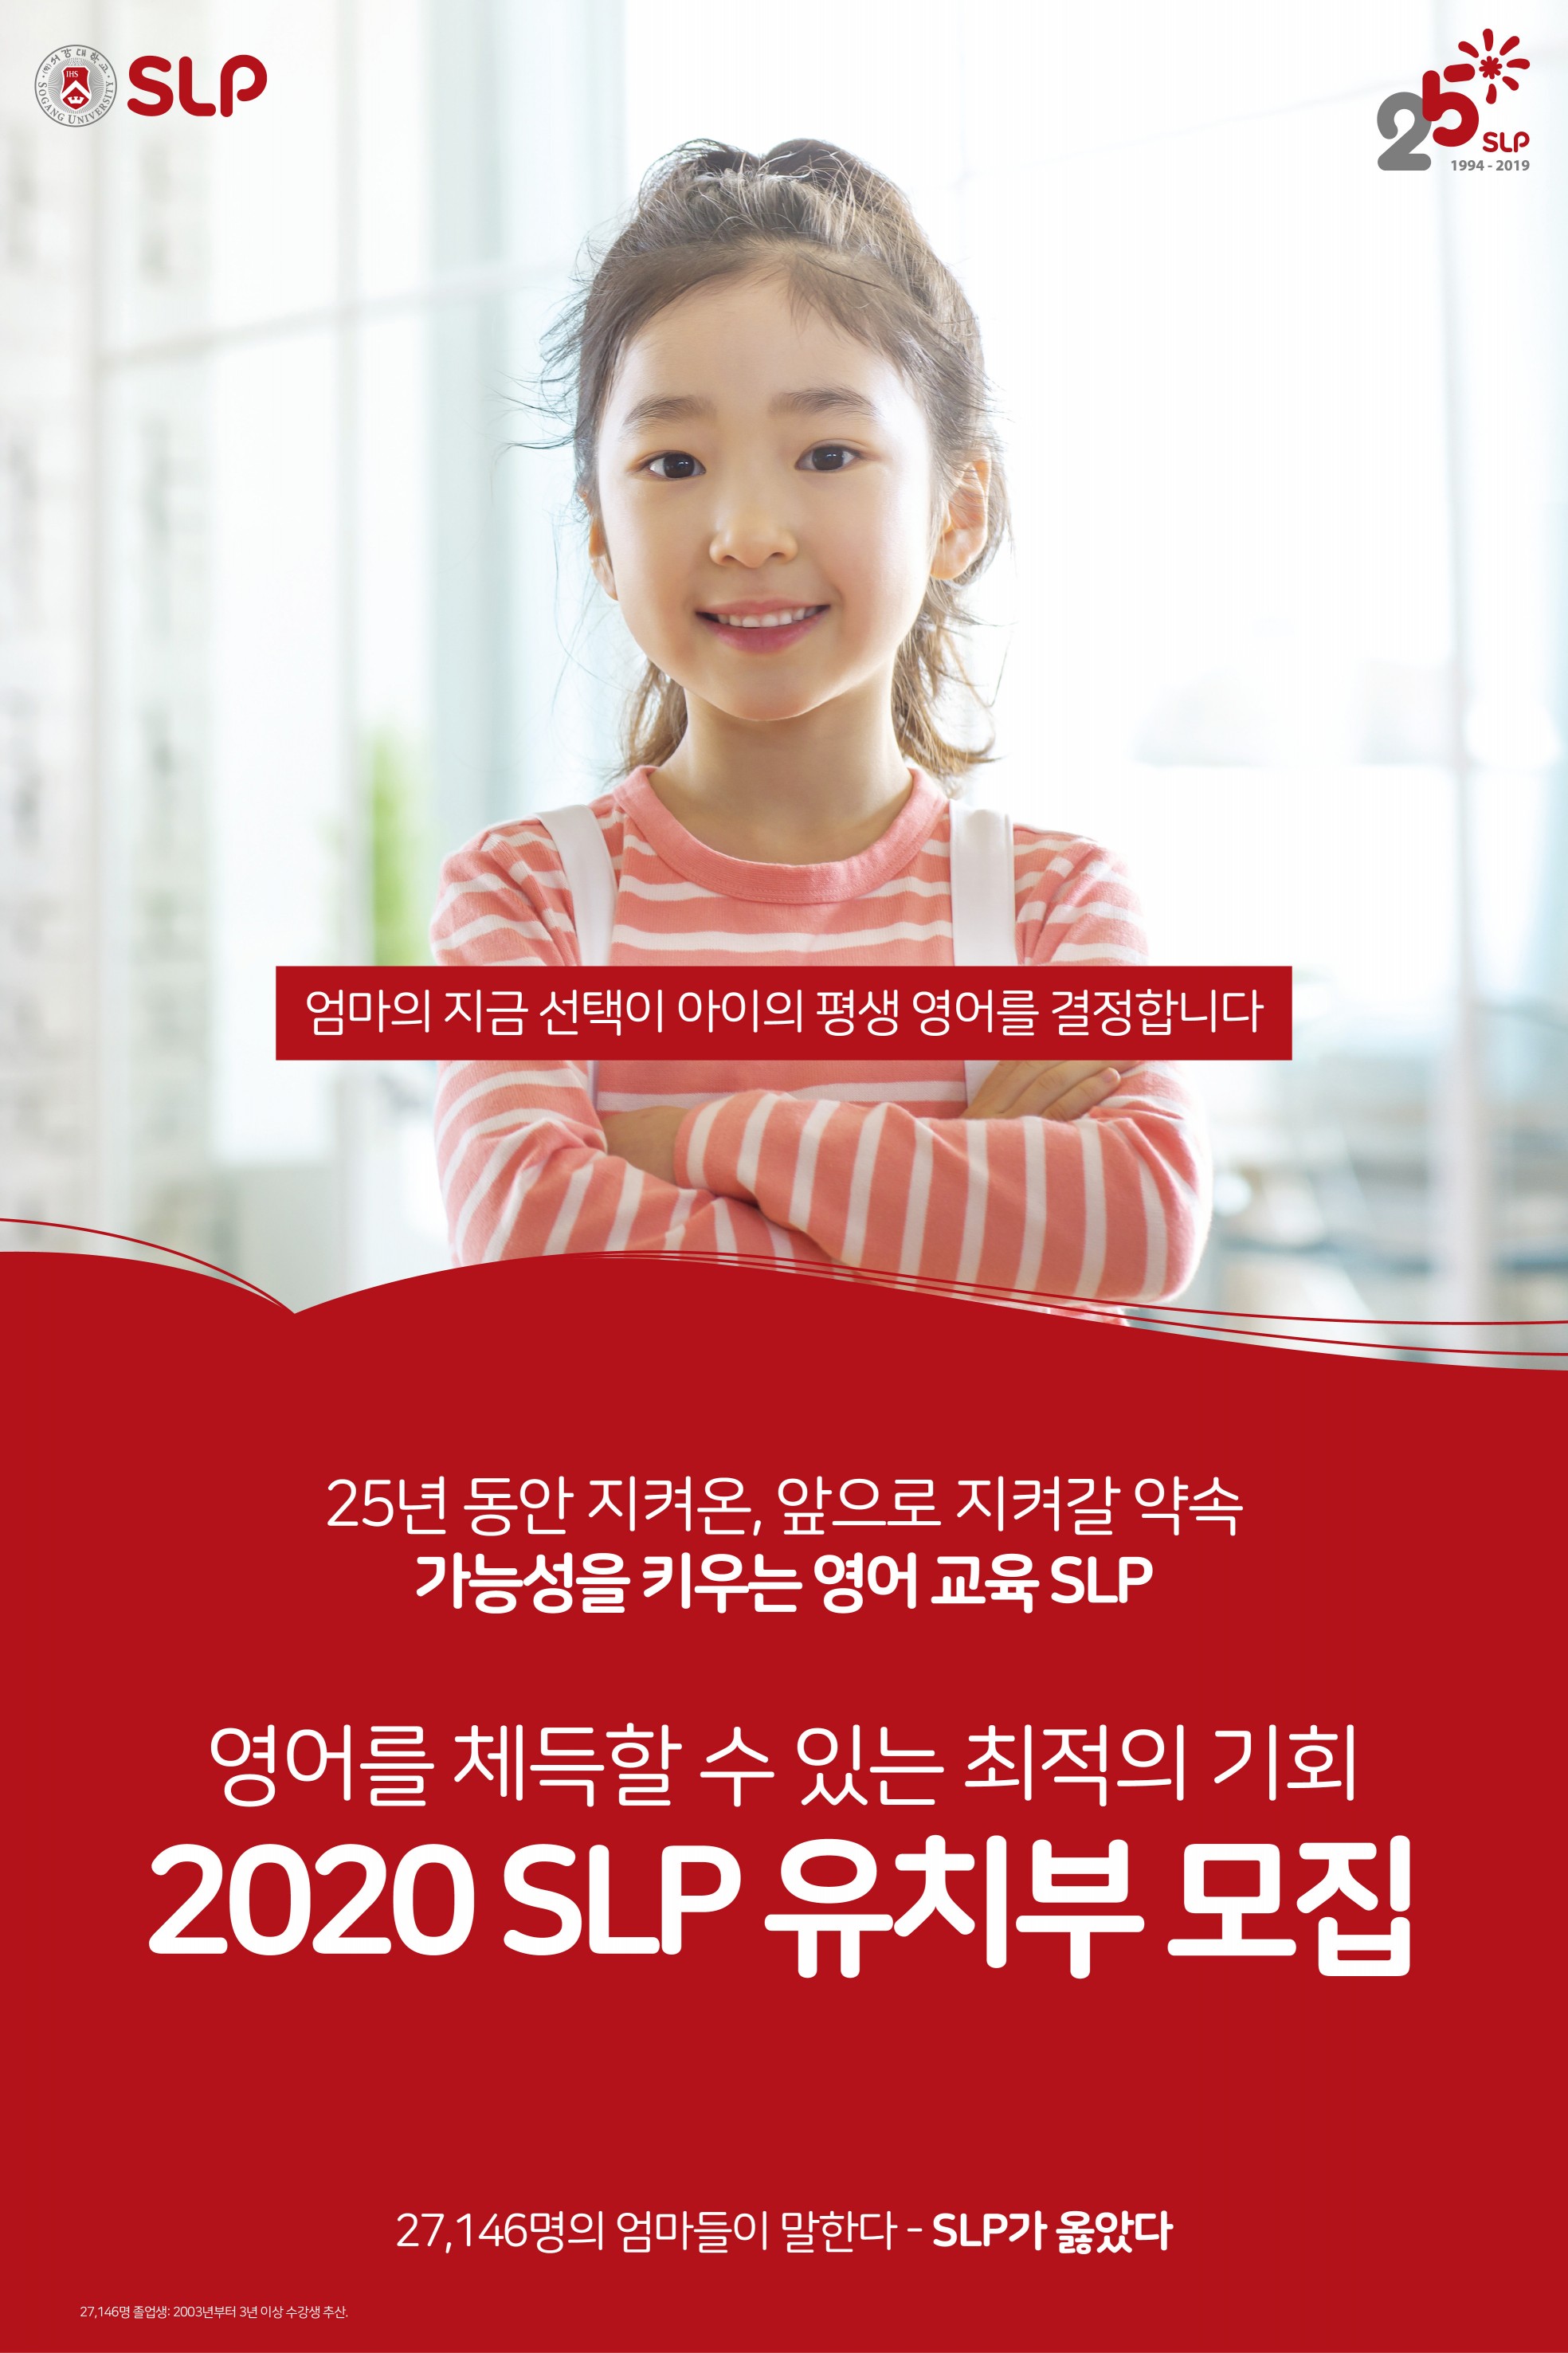 SLP 전국 59개 학당 2020년 유치부 신입생 모집